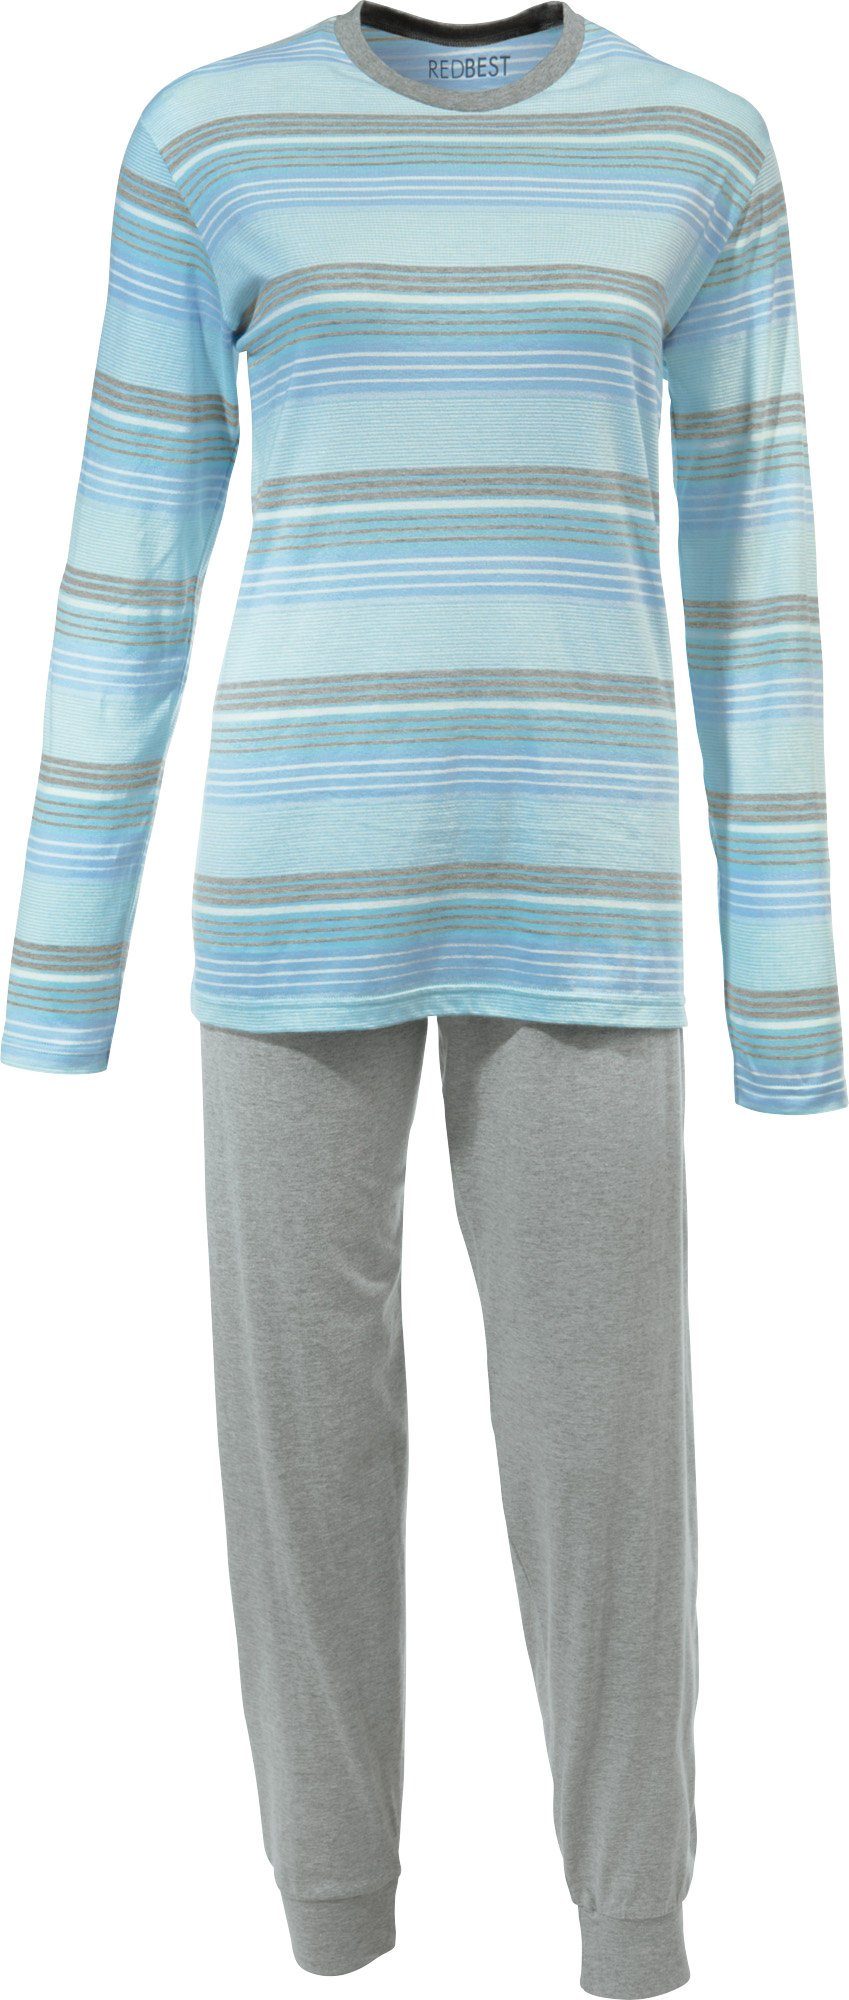 REDBEST Single-Jersey Damen-Schlafanzug Streifen Pyjama